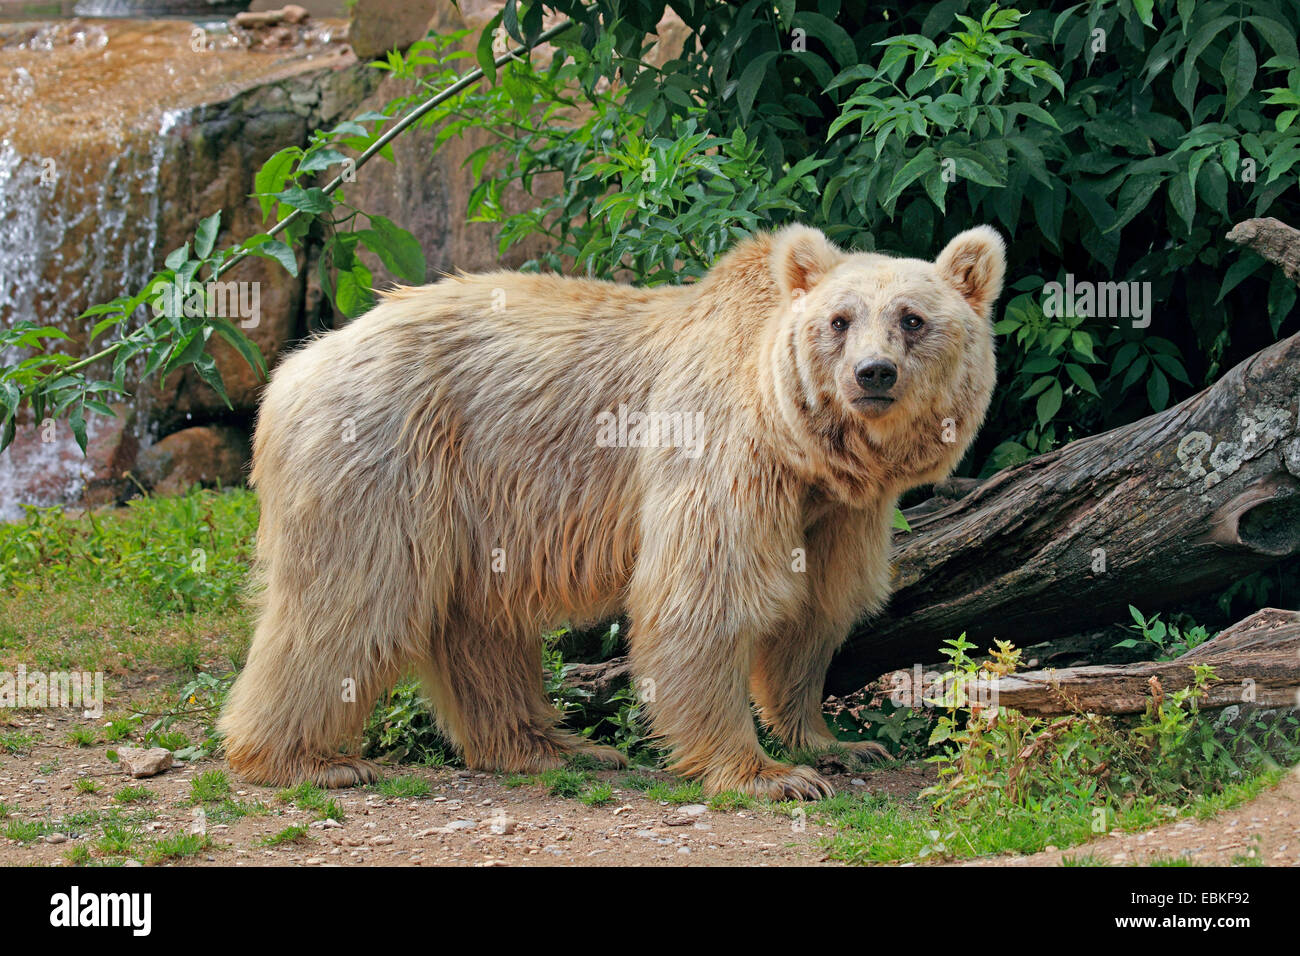 Syrian brown bear (Ursus arctos syriacus), in outdoor enclosure Stock Photo